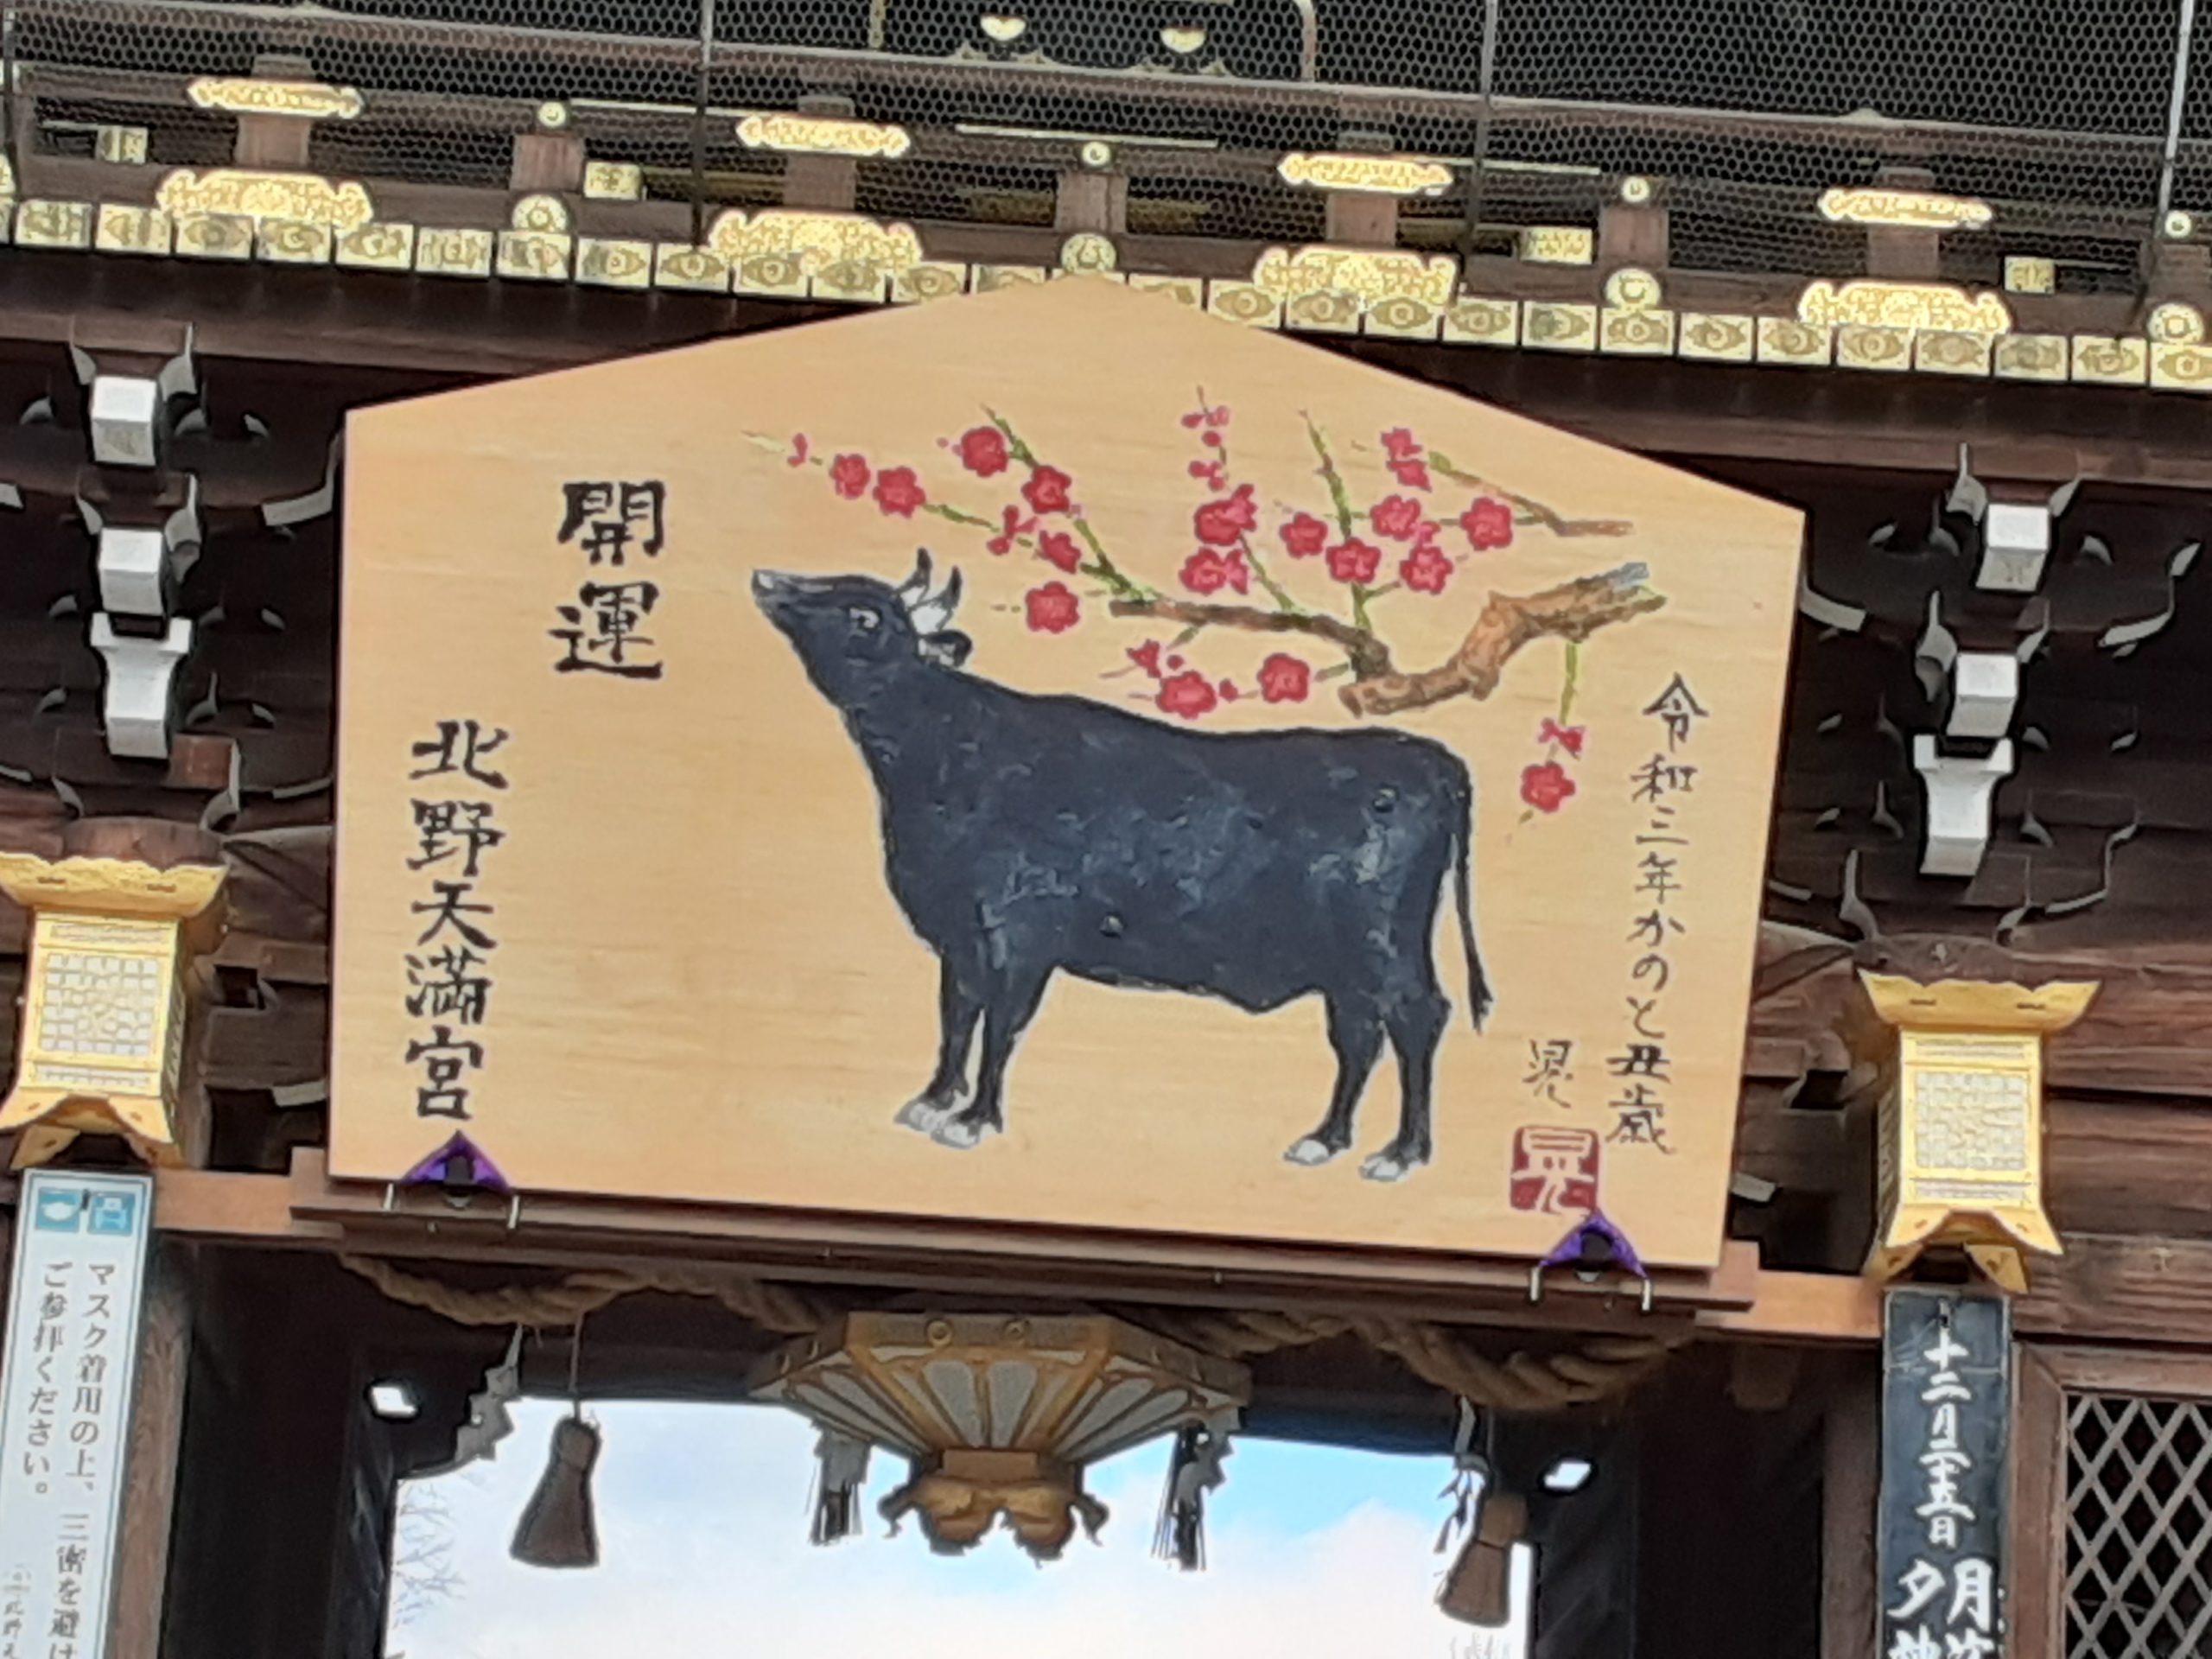 今年も北野天満宮の終い天神へいき、京都の師走の風物詩を味わいました🎍